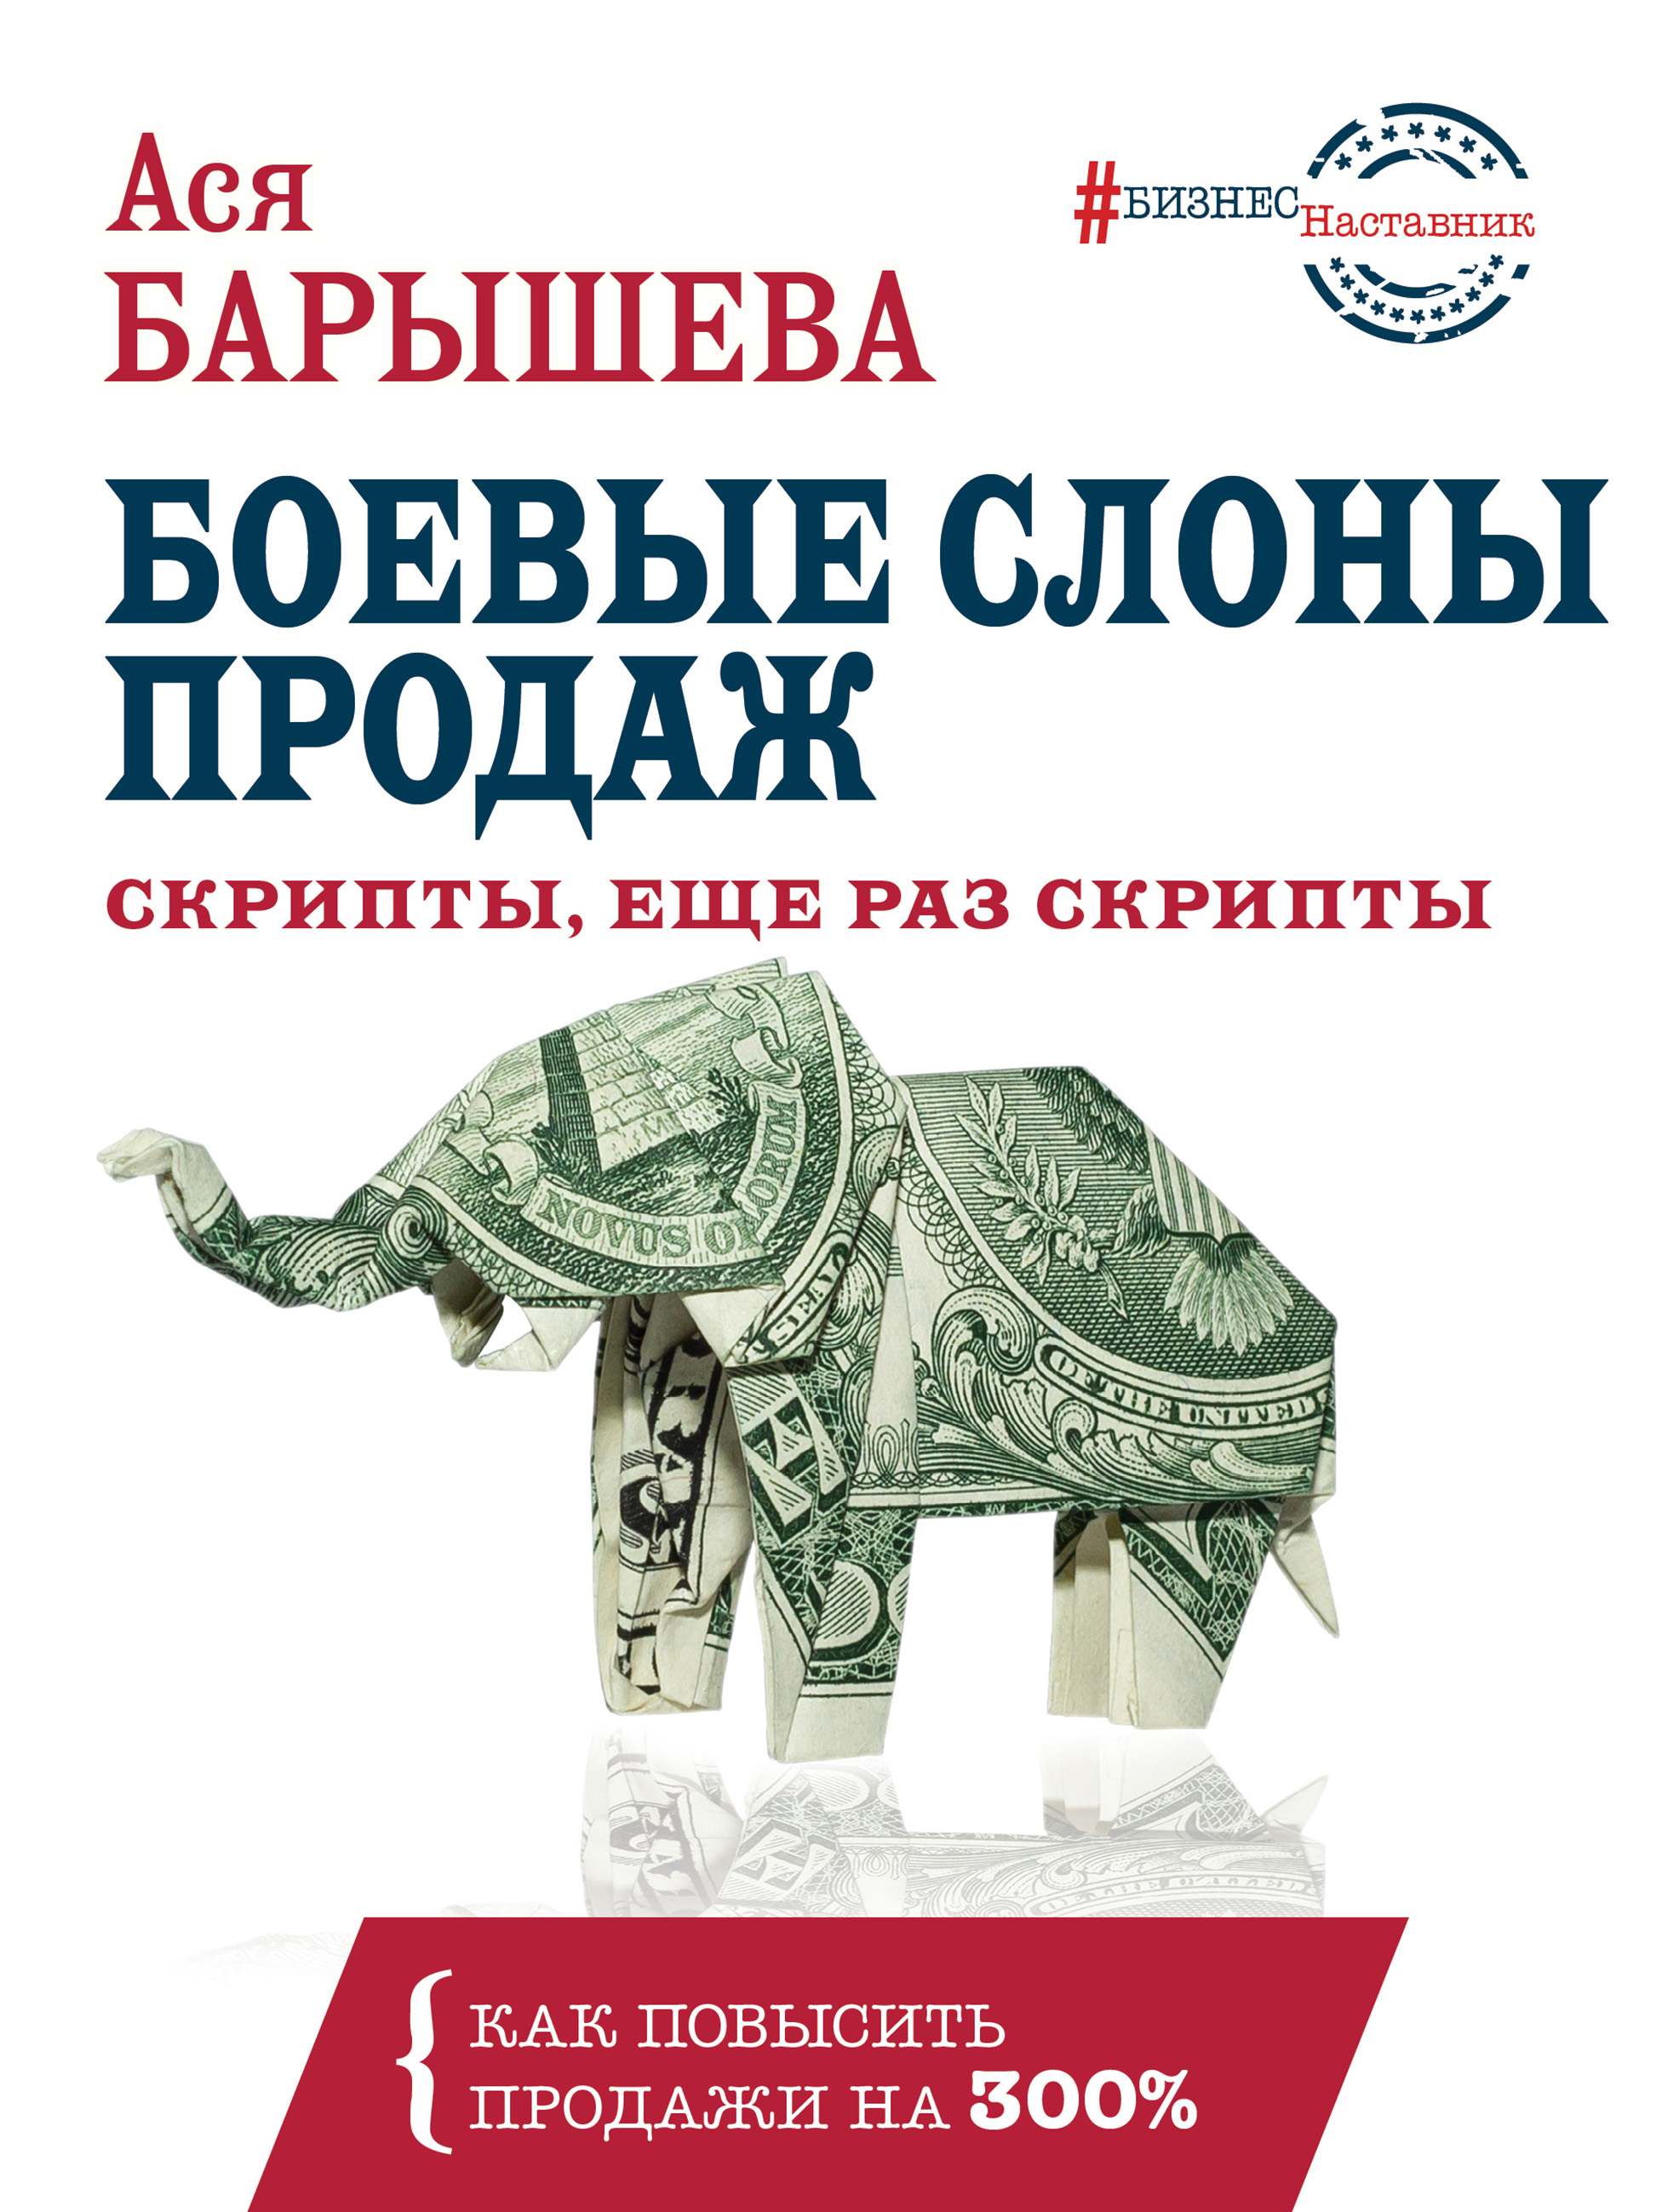 Книга #БизнесНаставник Боевые слоны продаж созданная Ася Барышева может относится к жанру привлечение клиентов, просто о бизнесе, реклама. Стоимость электронной книги Боевые слоны продаж с идентификатором 42628292 составляет 399.00 руб.